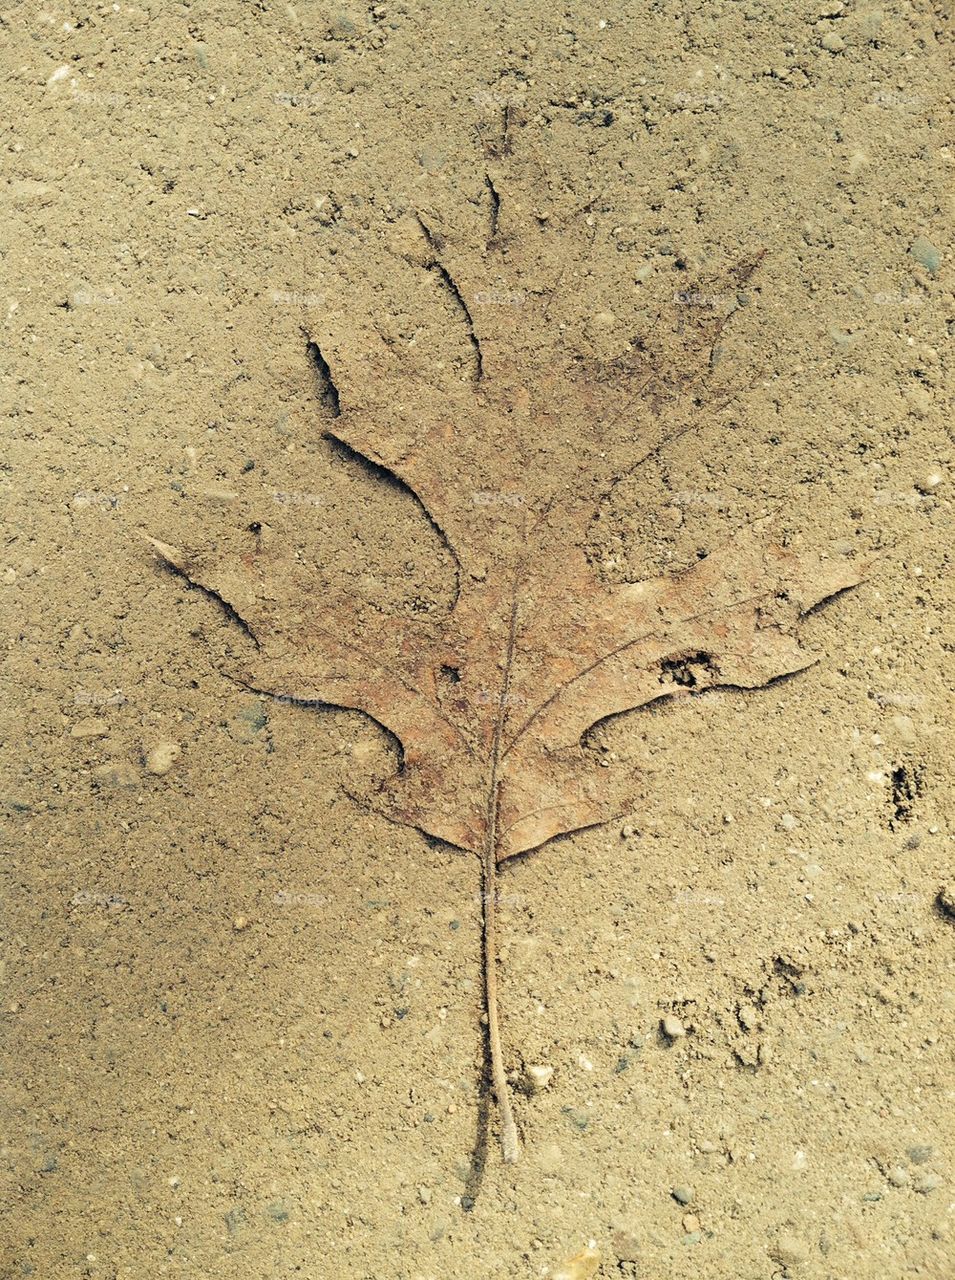 Dust covered oak leaf 